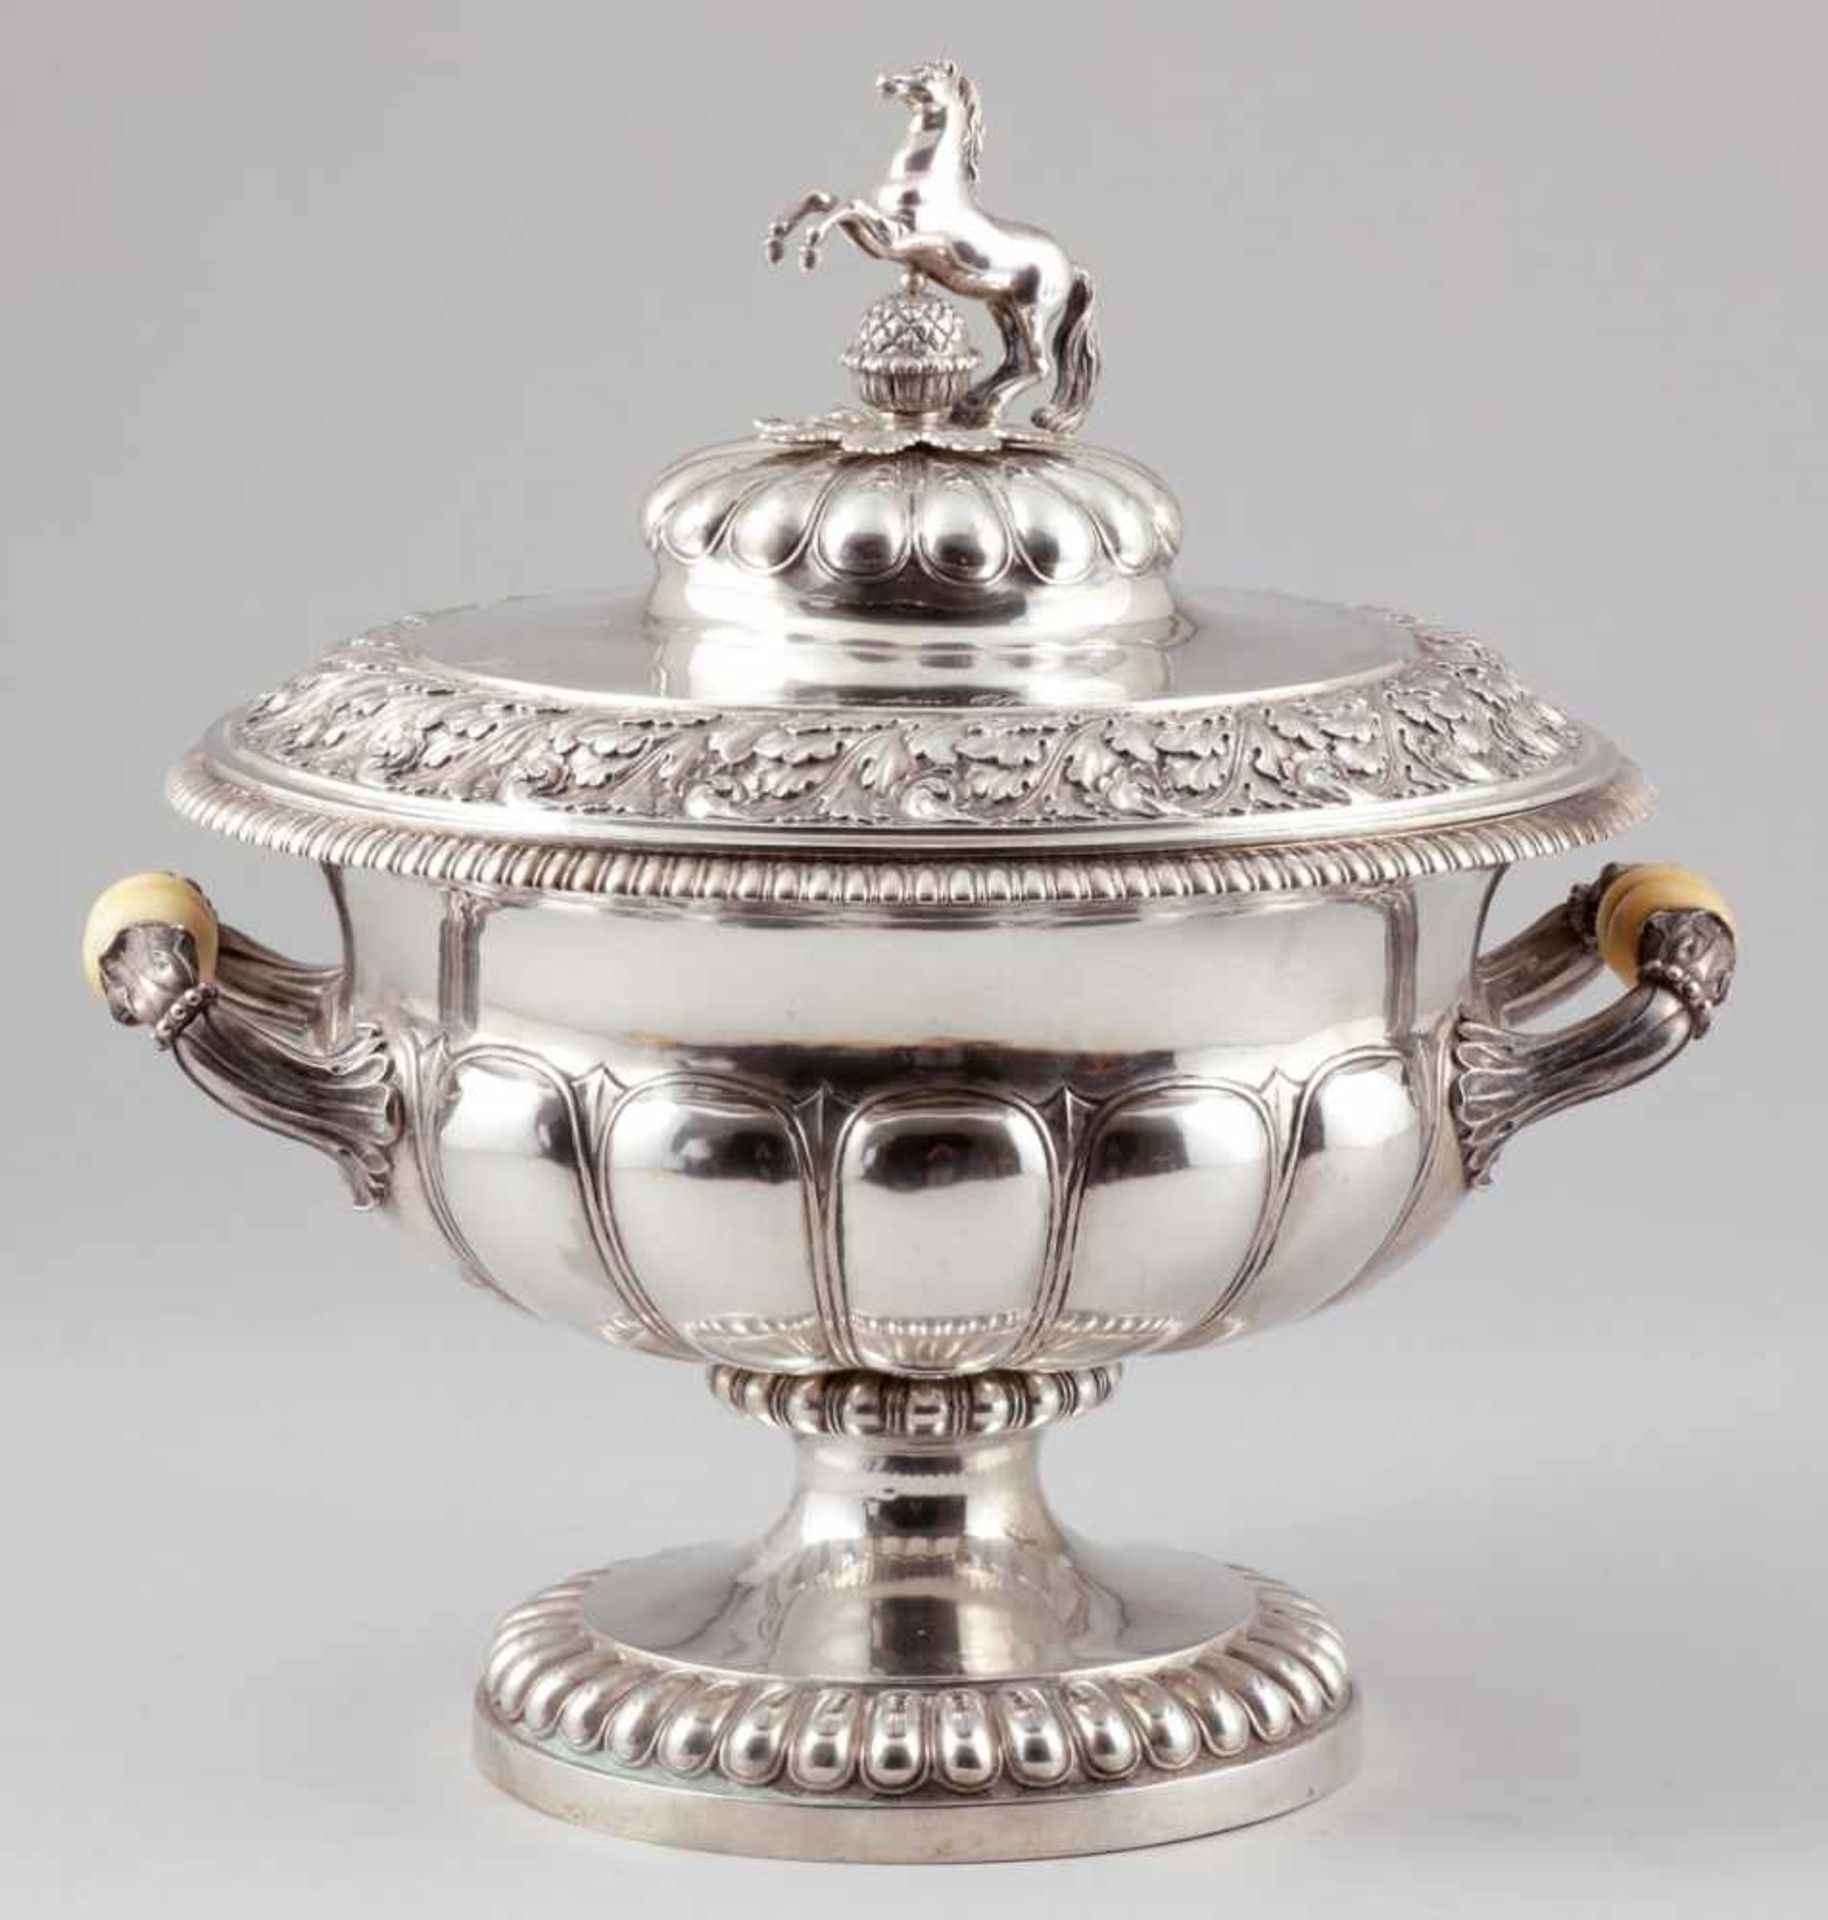 Hochbedeutende DeckelterrineGeorg Julius Friedrich Knauer/Hannover, um 1842. 800er Silber. Punzen: